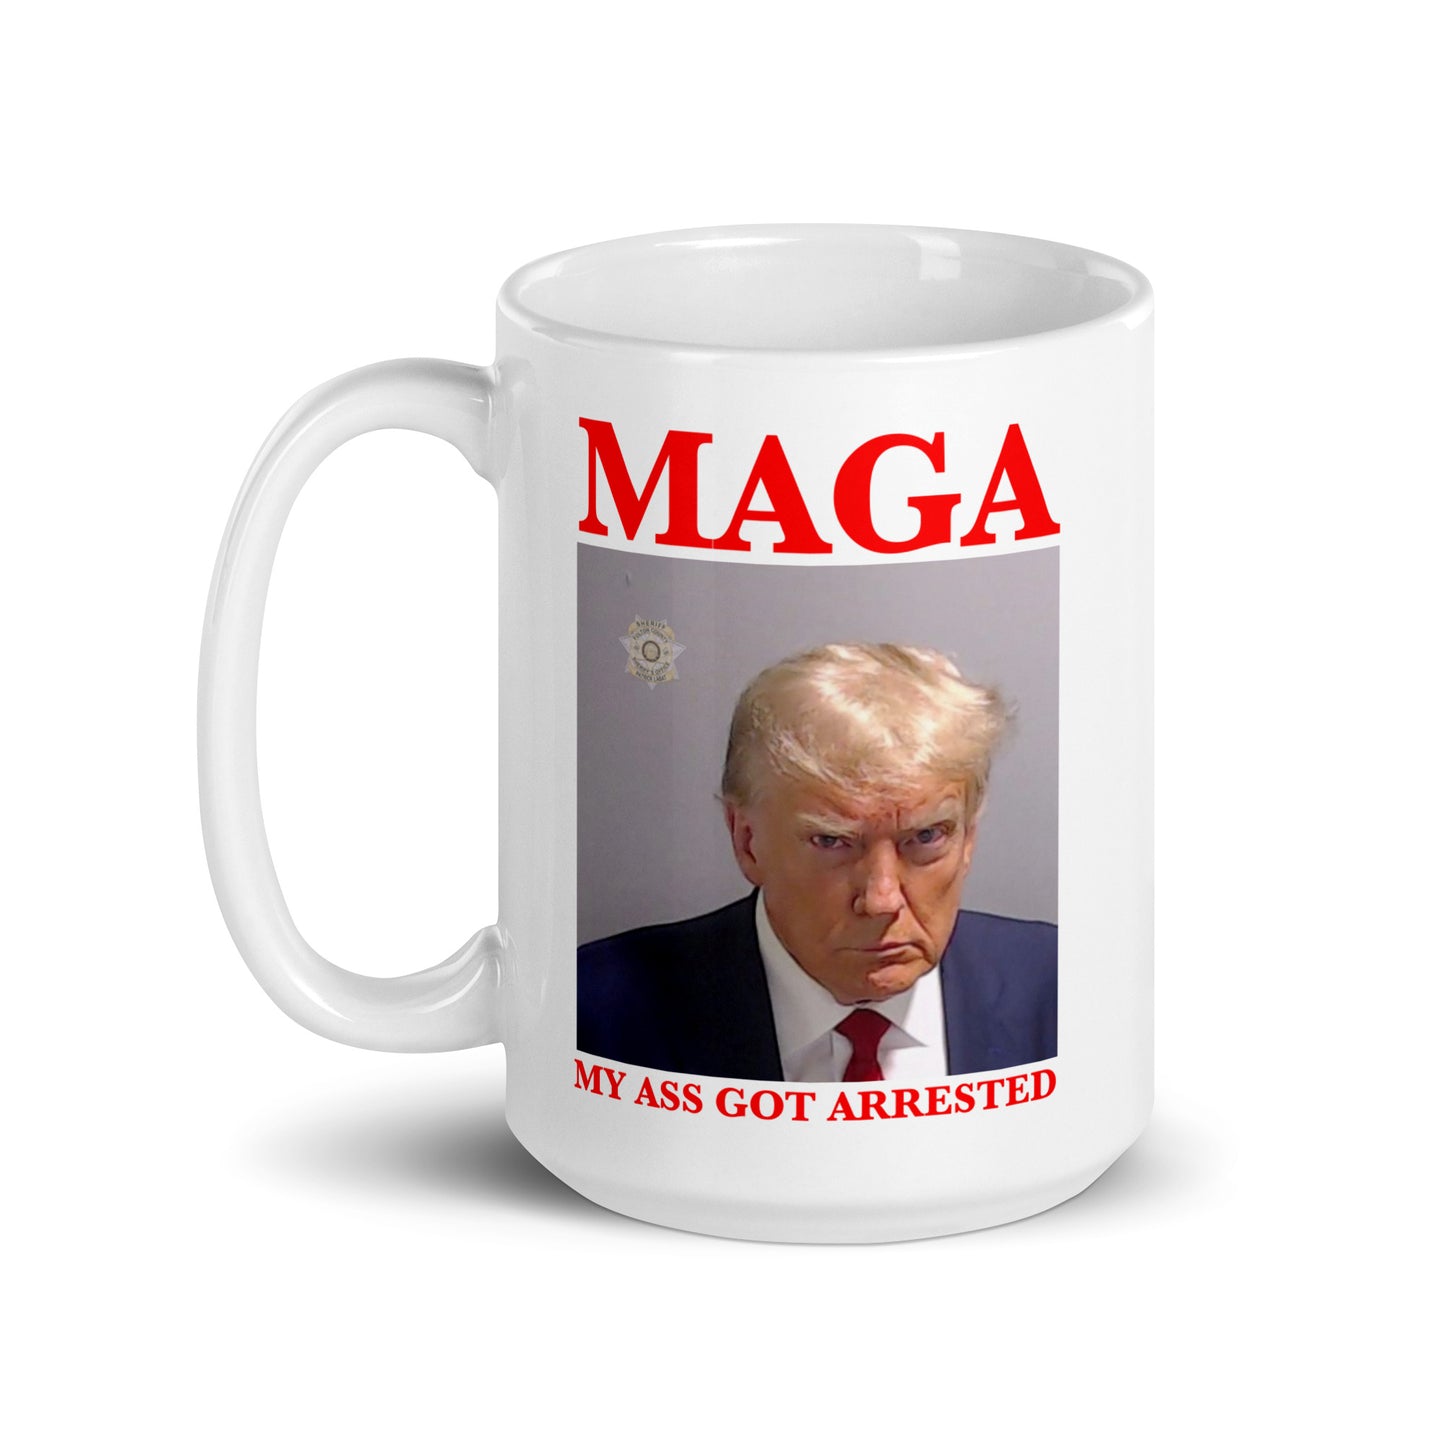 MAGA My Ass Got Arrested (Trump Mugshot) mug